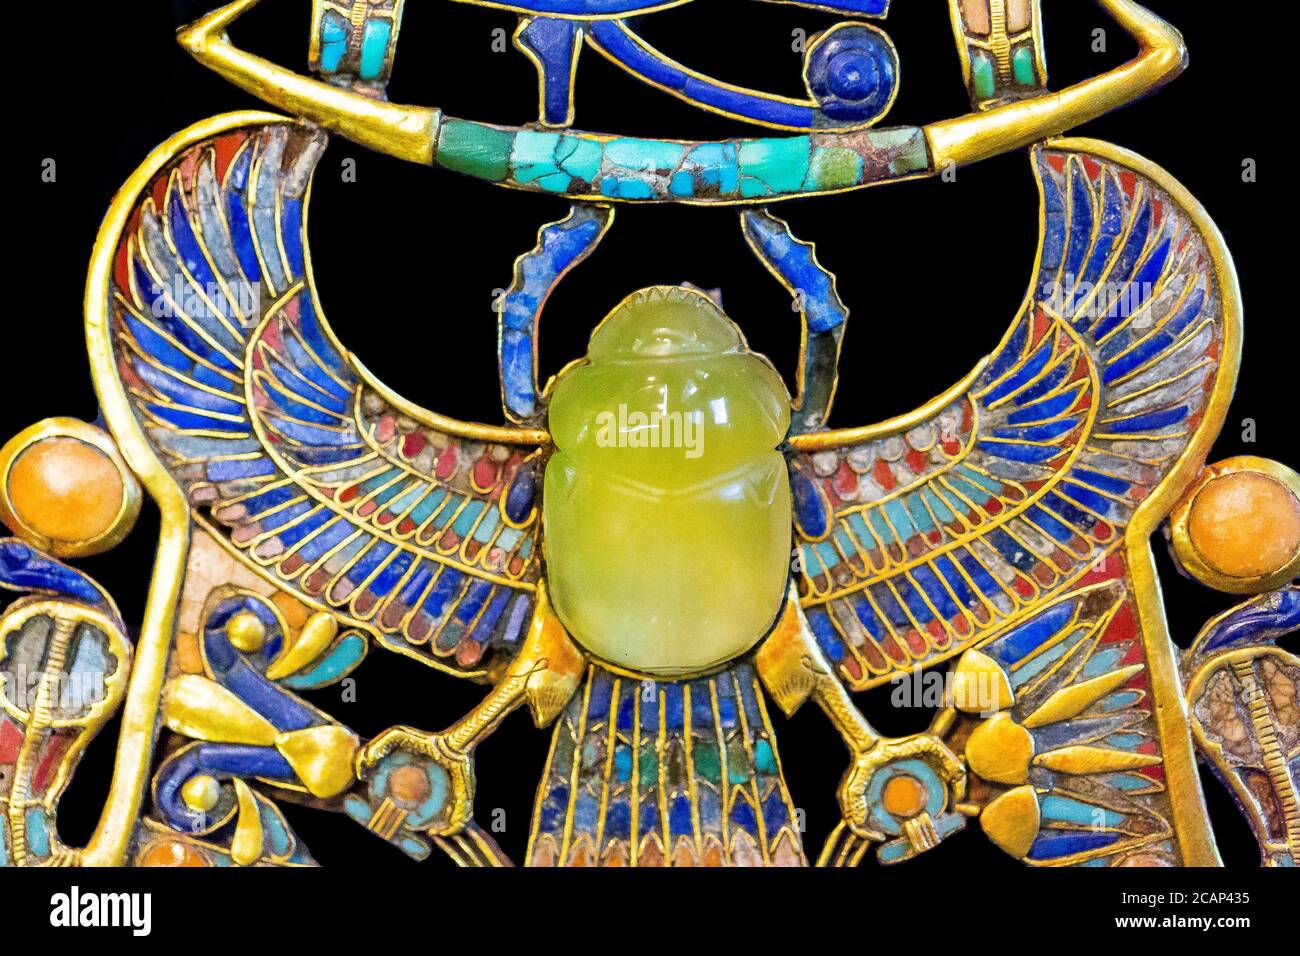 Ägypten, Kairo, Tutanchamon Schmuck, aus seinem Grab in Luxor, Teil eines komplexen Brustkorbs : Ein geflügelter Scarab hält eine Barke. Stockfoto